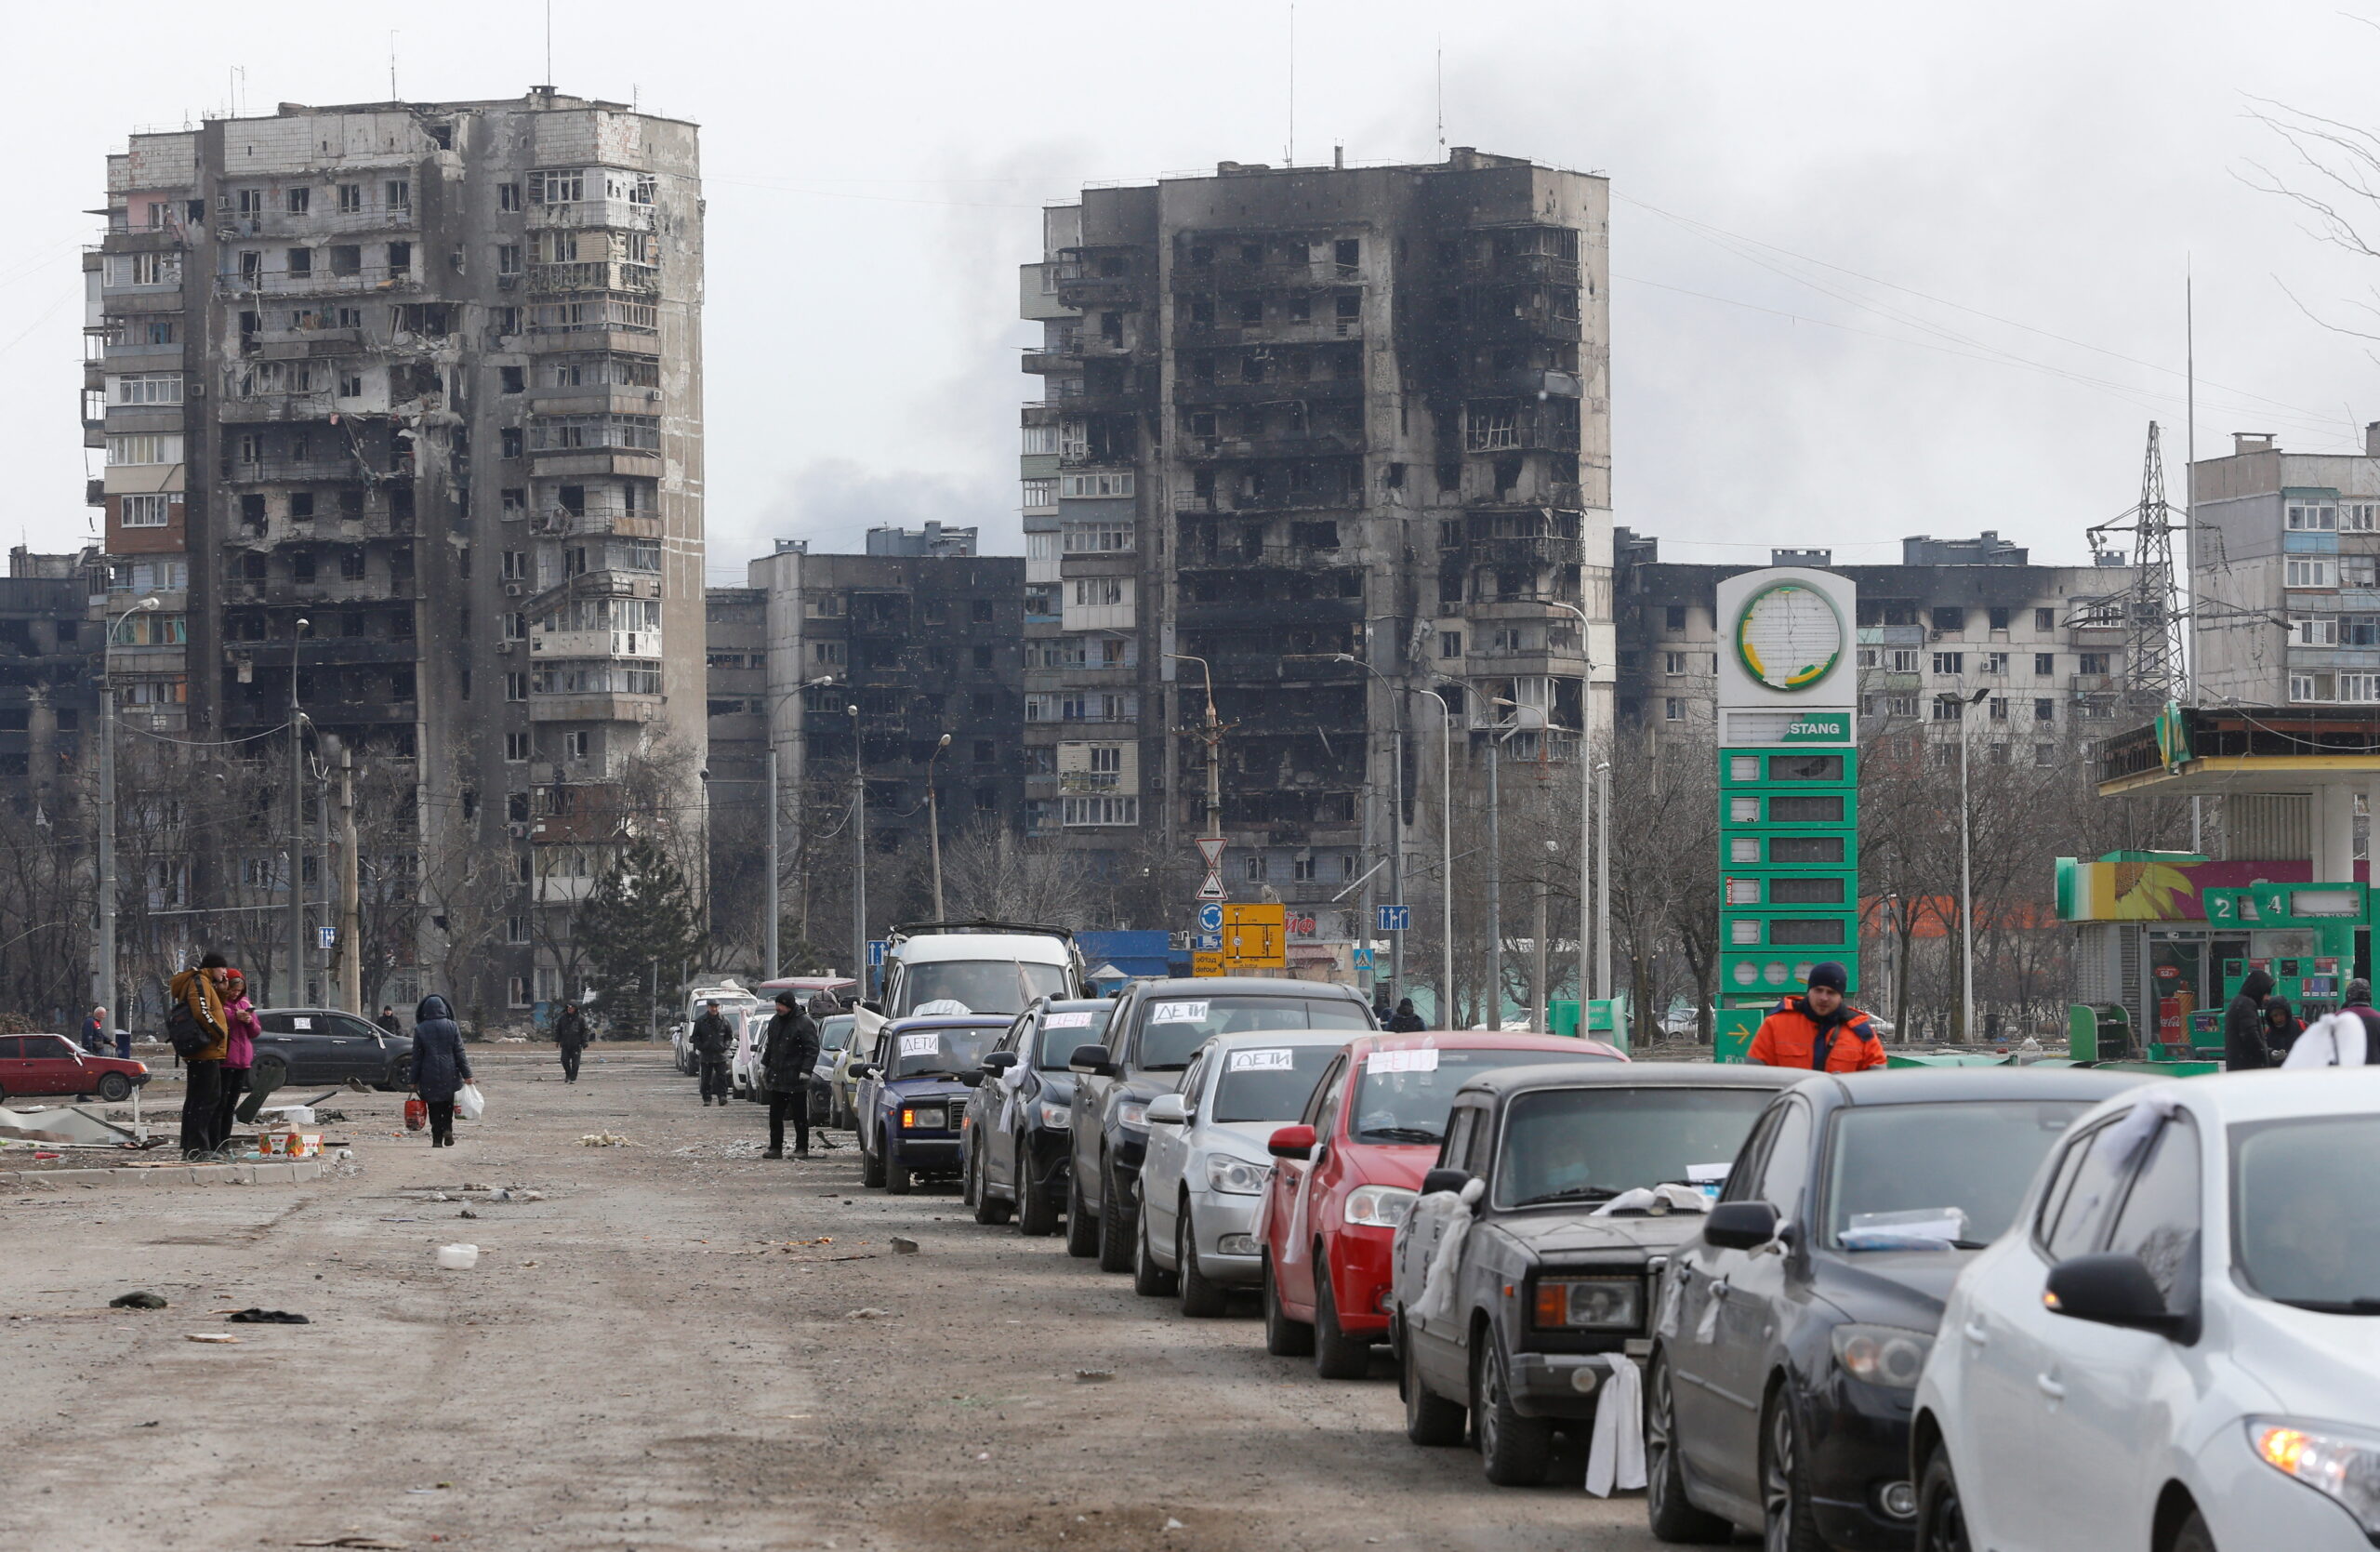 Вереницв автомобилей возле многоквартирных домов, разрушенных во время обстреров, покидающих город. Мариуполь, Украина, 17 марта 2022 года. © REUTERS / Alexander Ermochenko / Scanpix / Leta